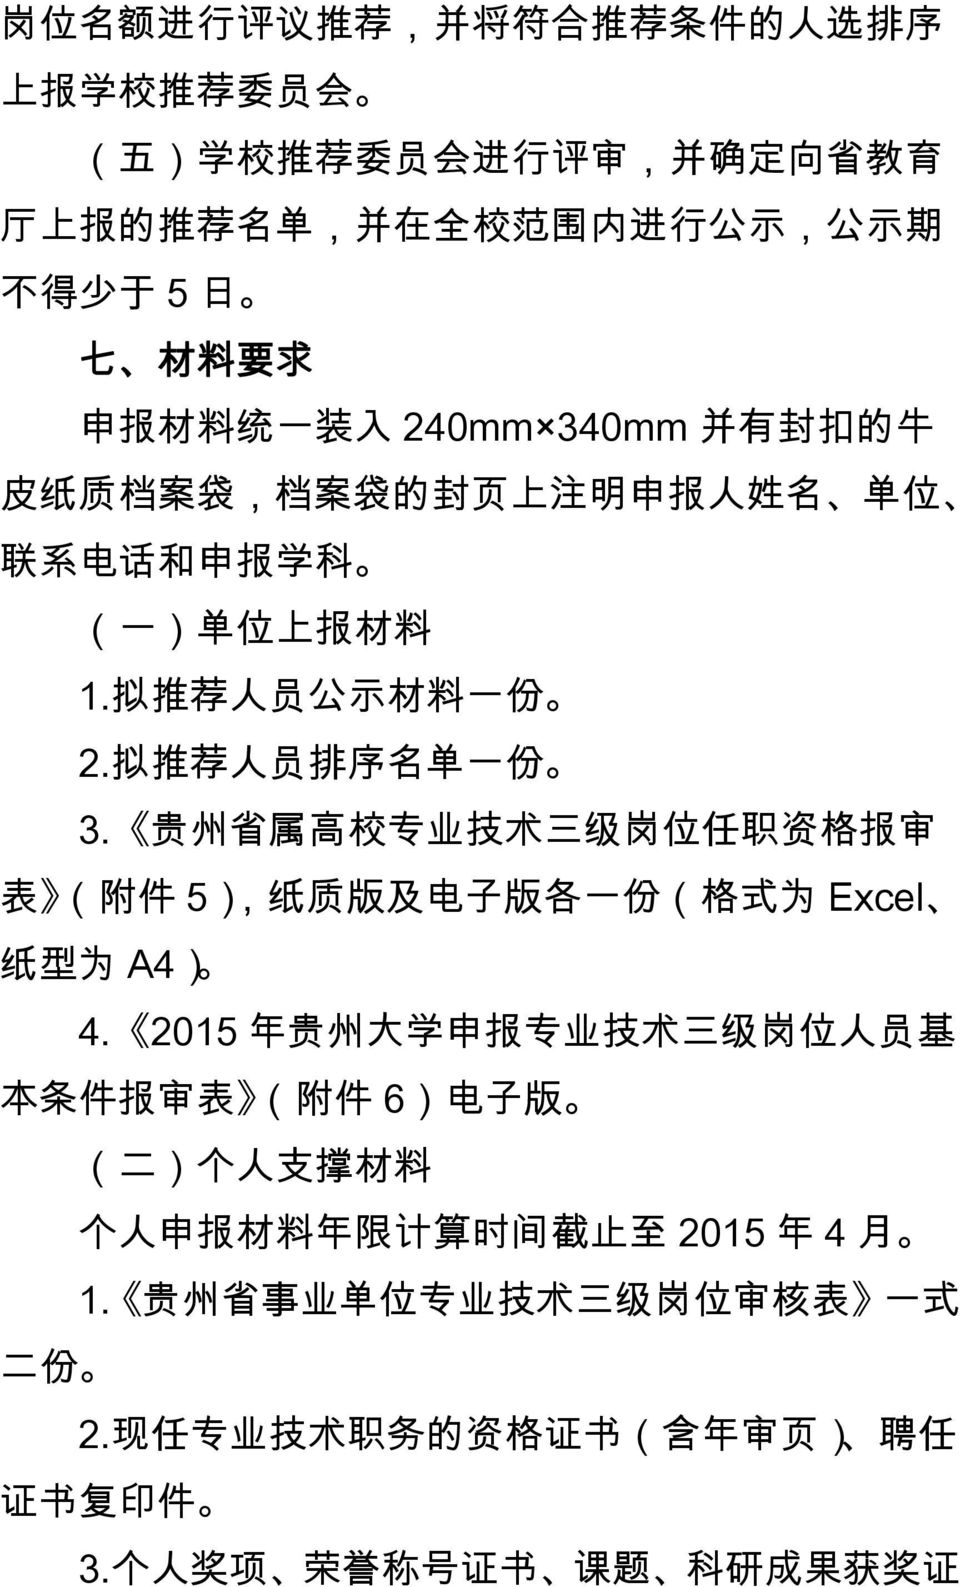 贵 州 省 属 高 校 专 业 技 术 三 级 岗 位 任 职 资 格 报 审 表 ( 附 件 5), 纸 质 版 及 电 子 版 各 一 份 ( 格 式 为 Excel 纸 型 为 A4) 4.